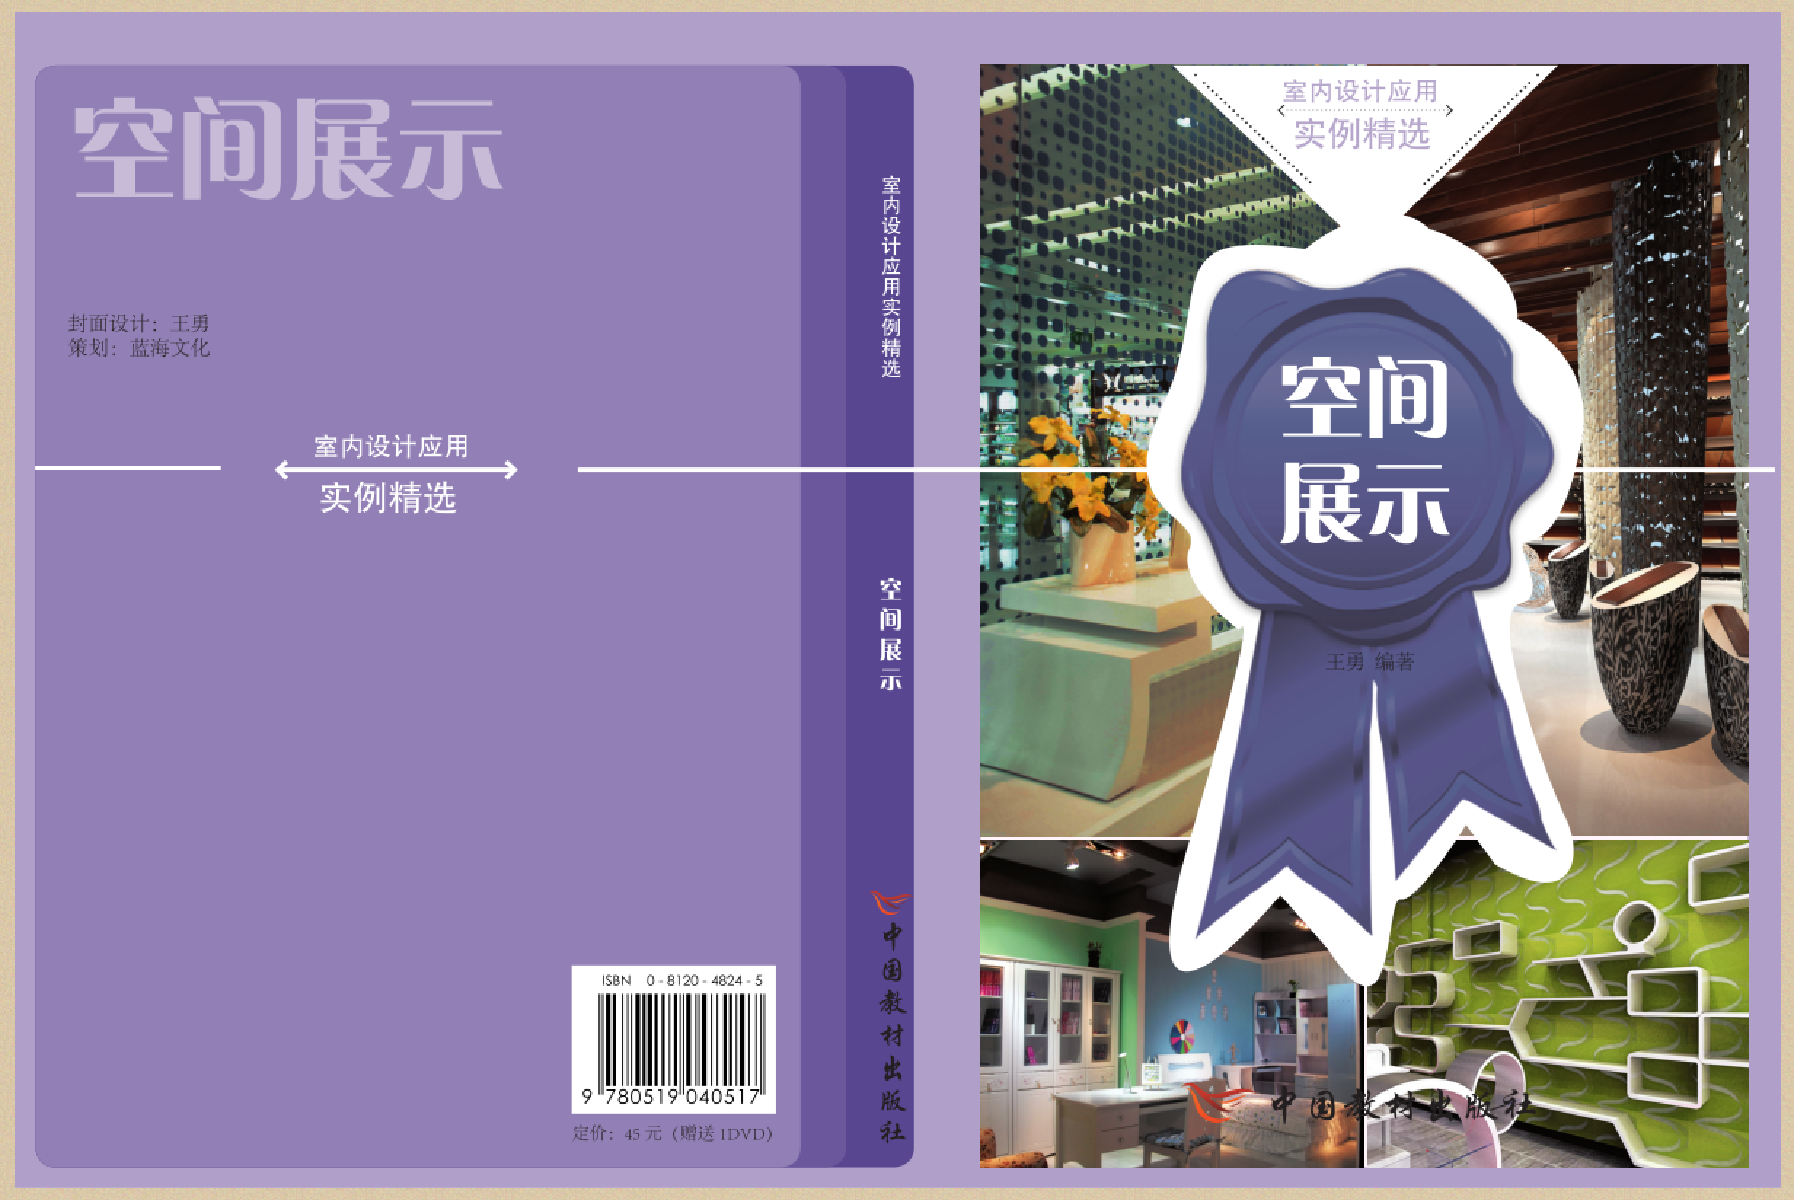 2005班 印刷数字图文信息技术专业 庄慧敏.png